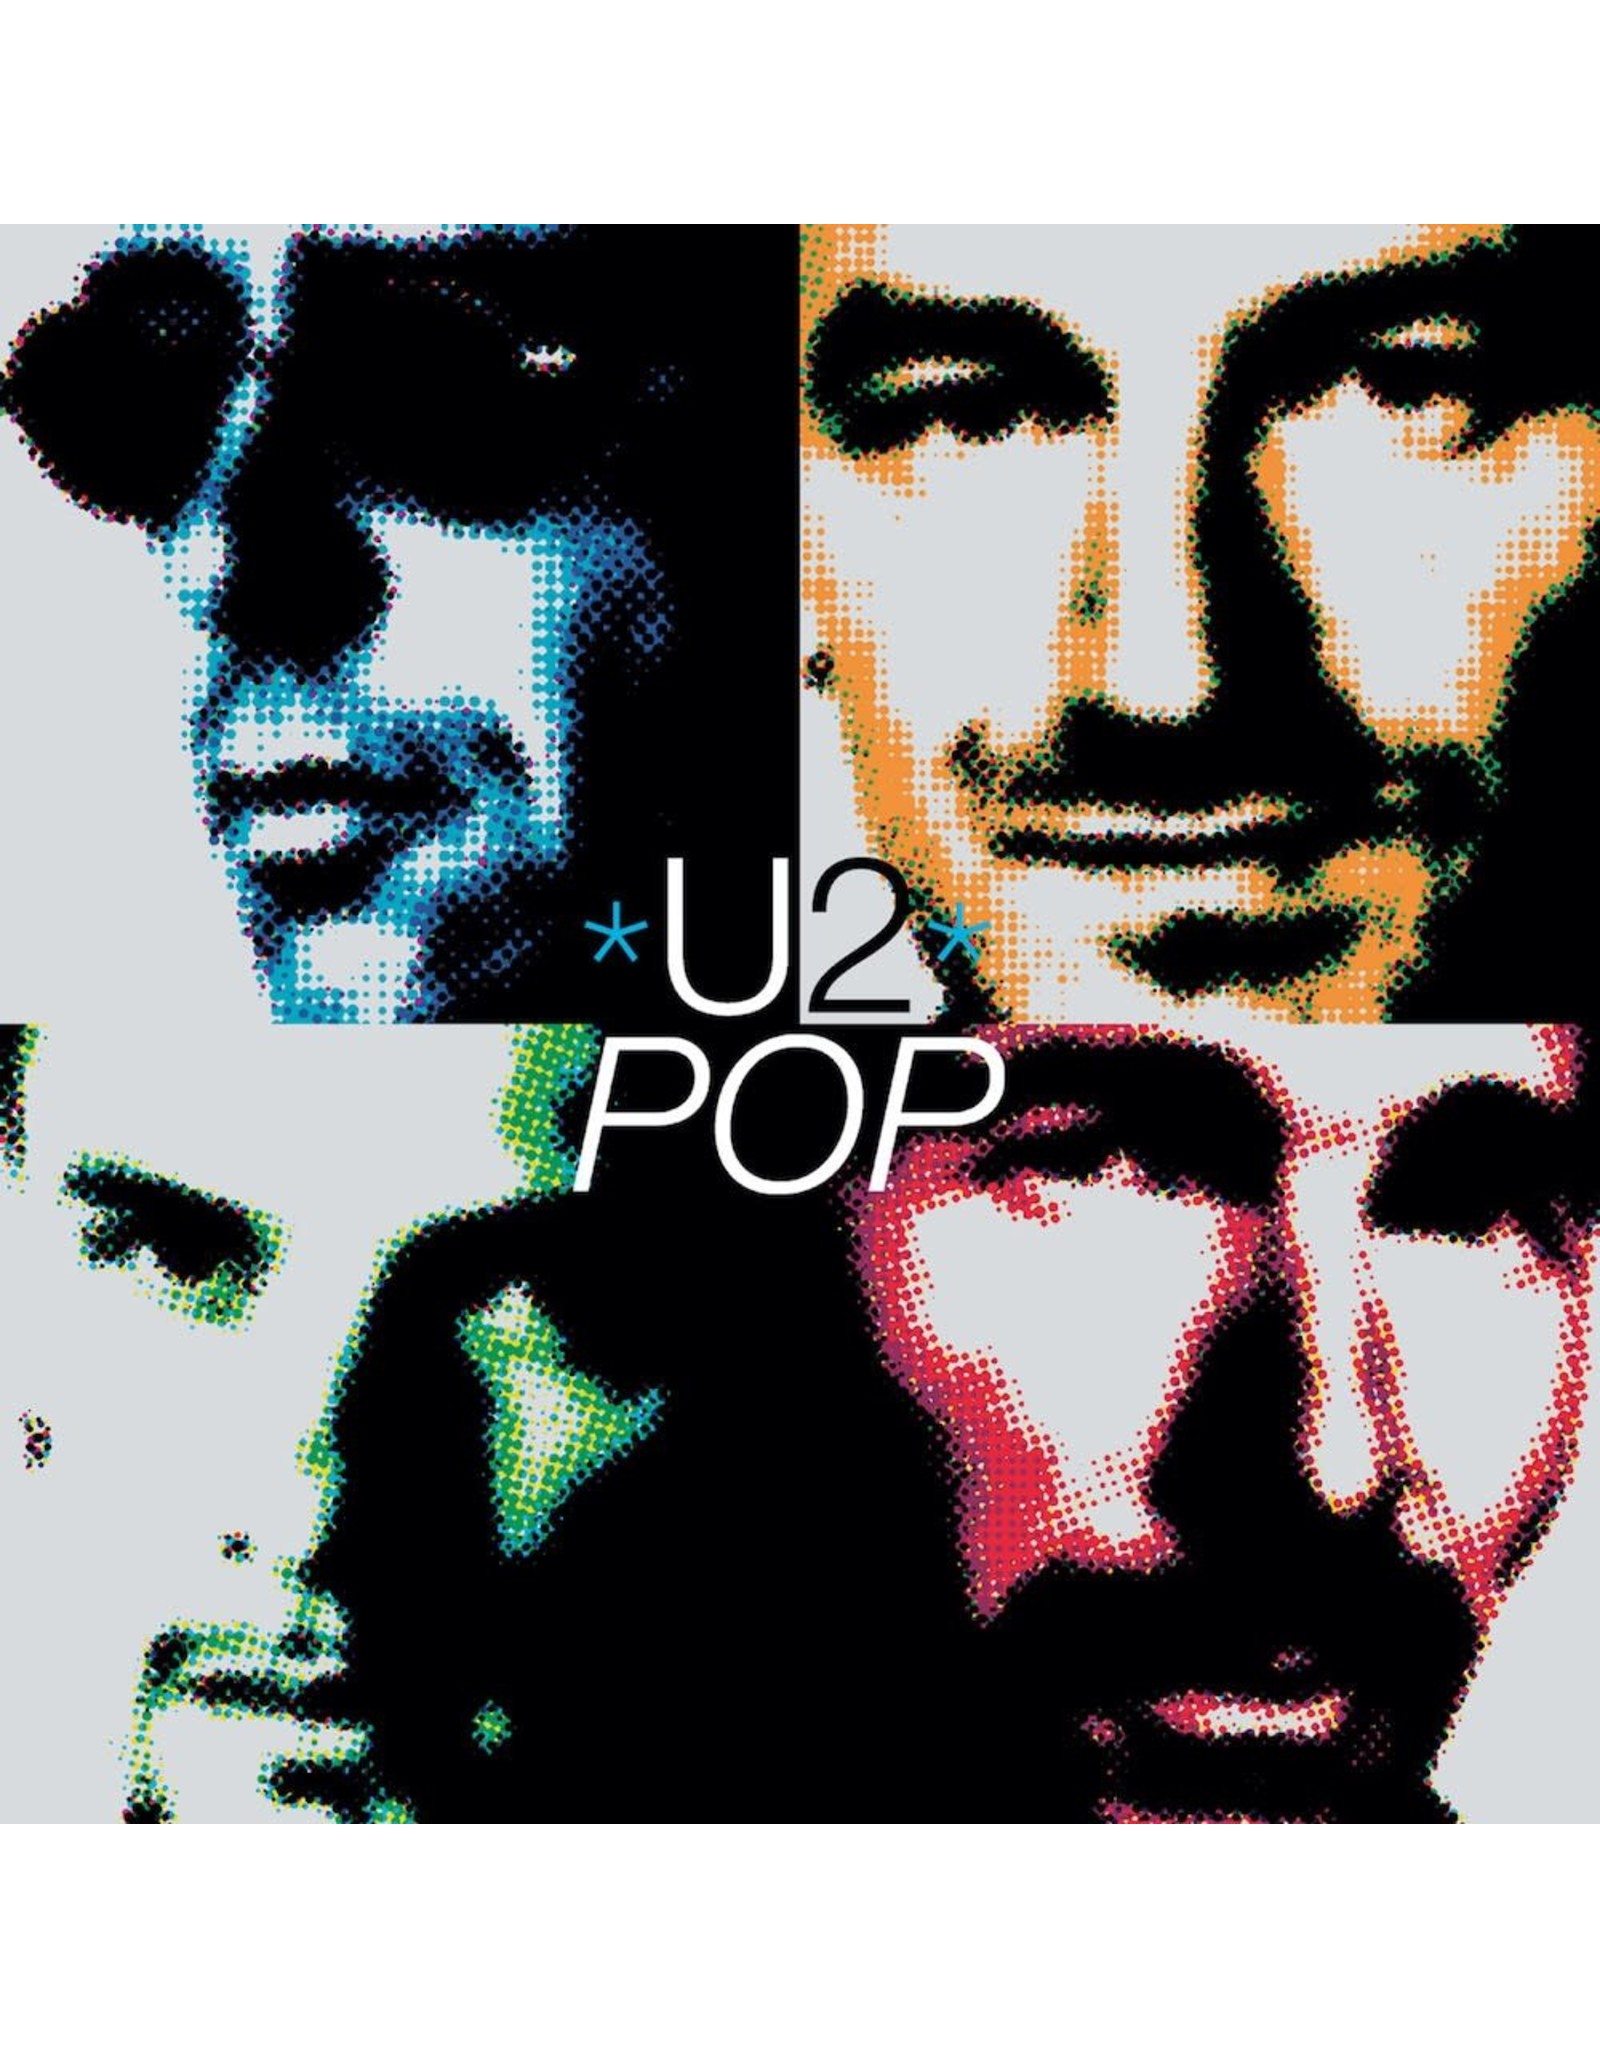 U2 - Pop (20th Anniversary)